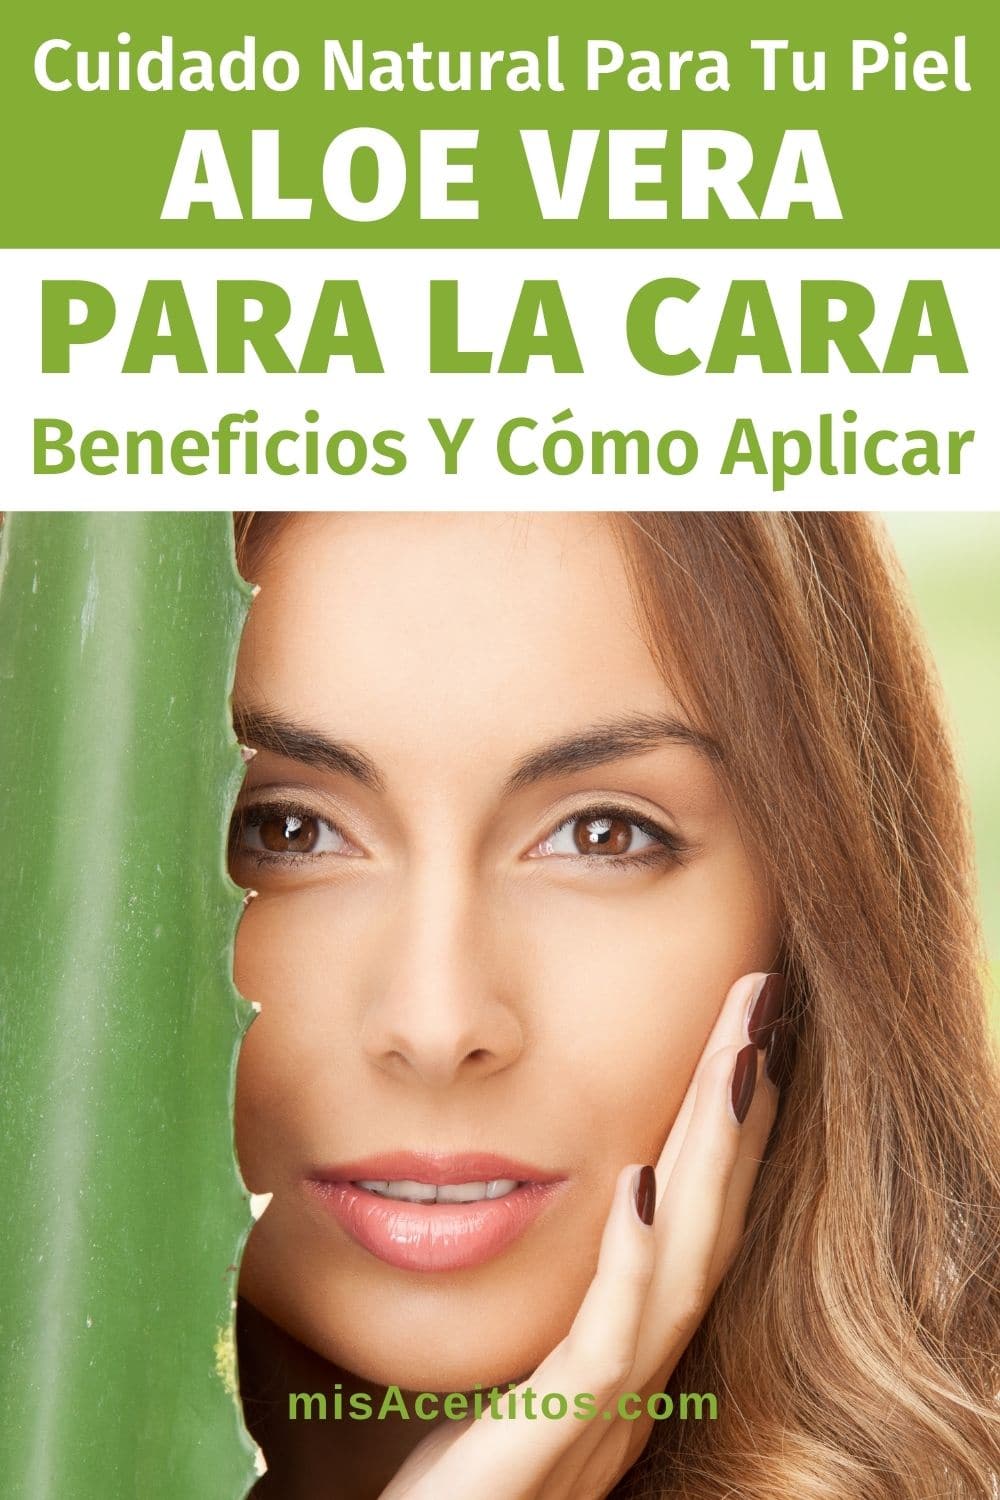 Beneficios y Usos del Aloe Vera para la Cara.